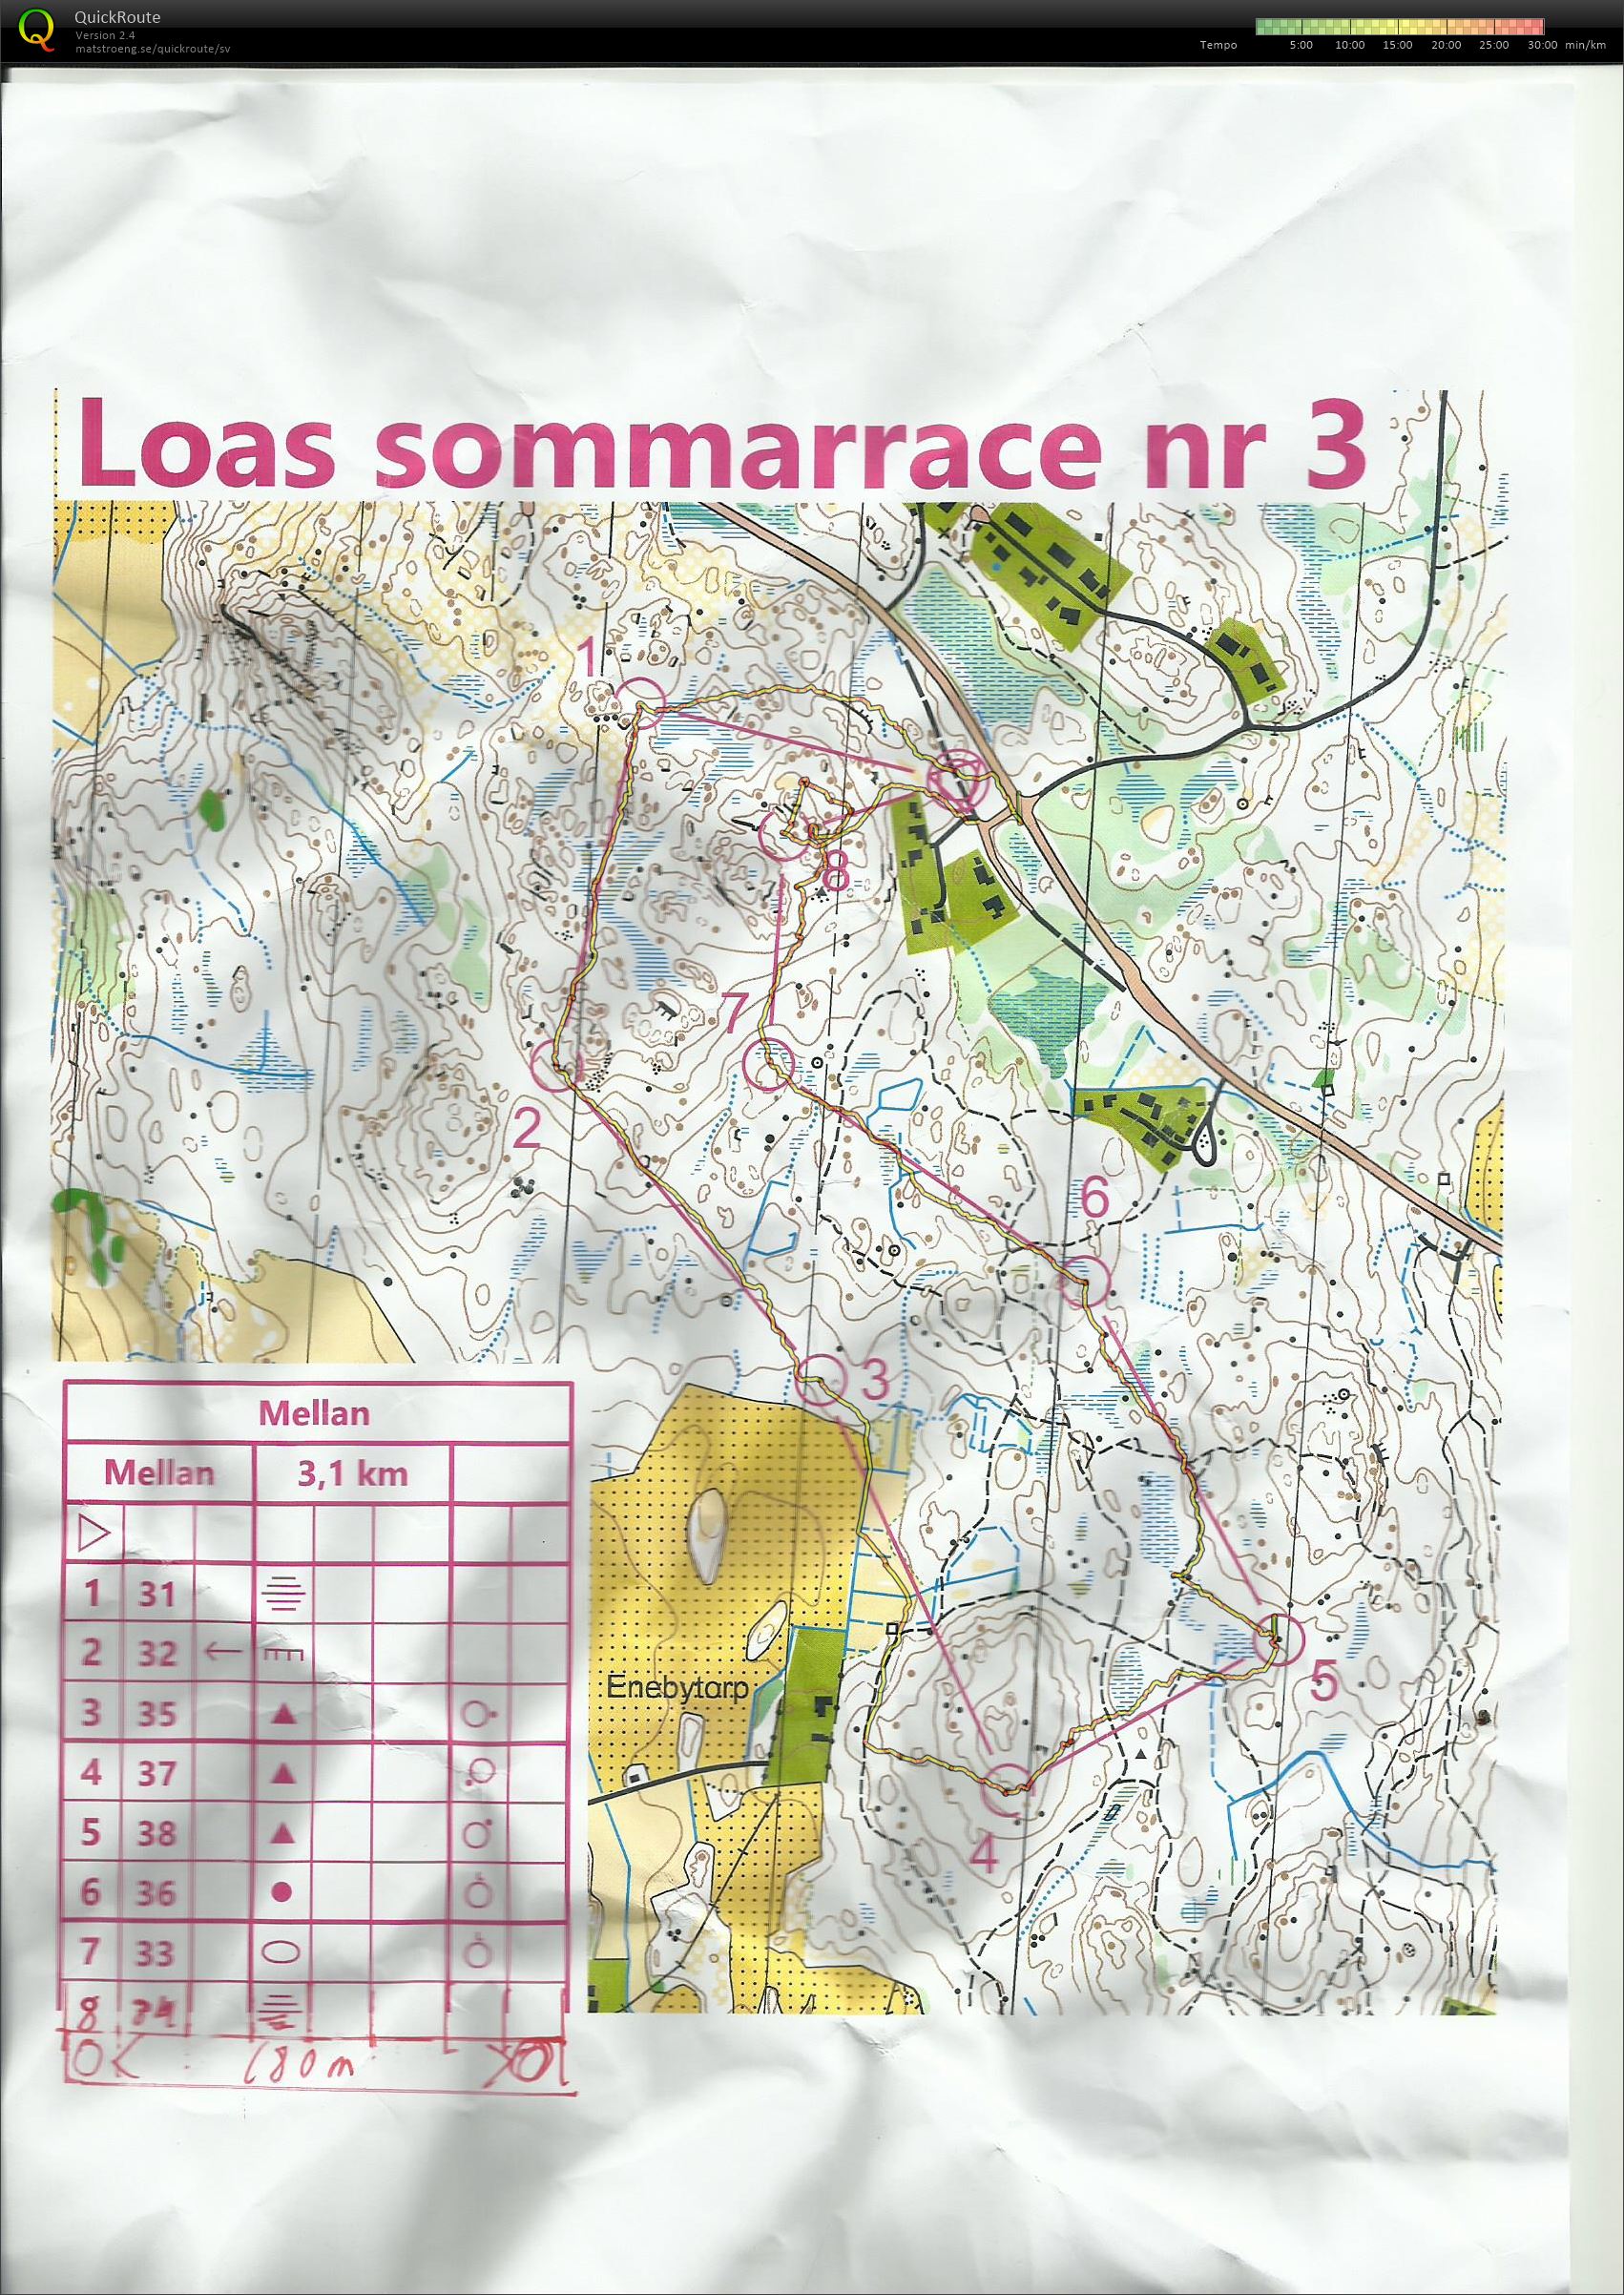 LOAs Sommarrace 3 (05-08-2020)